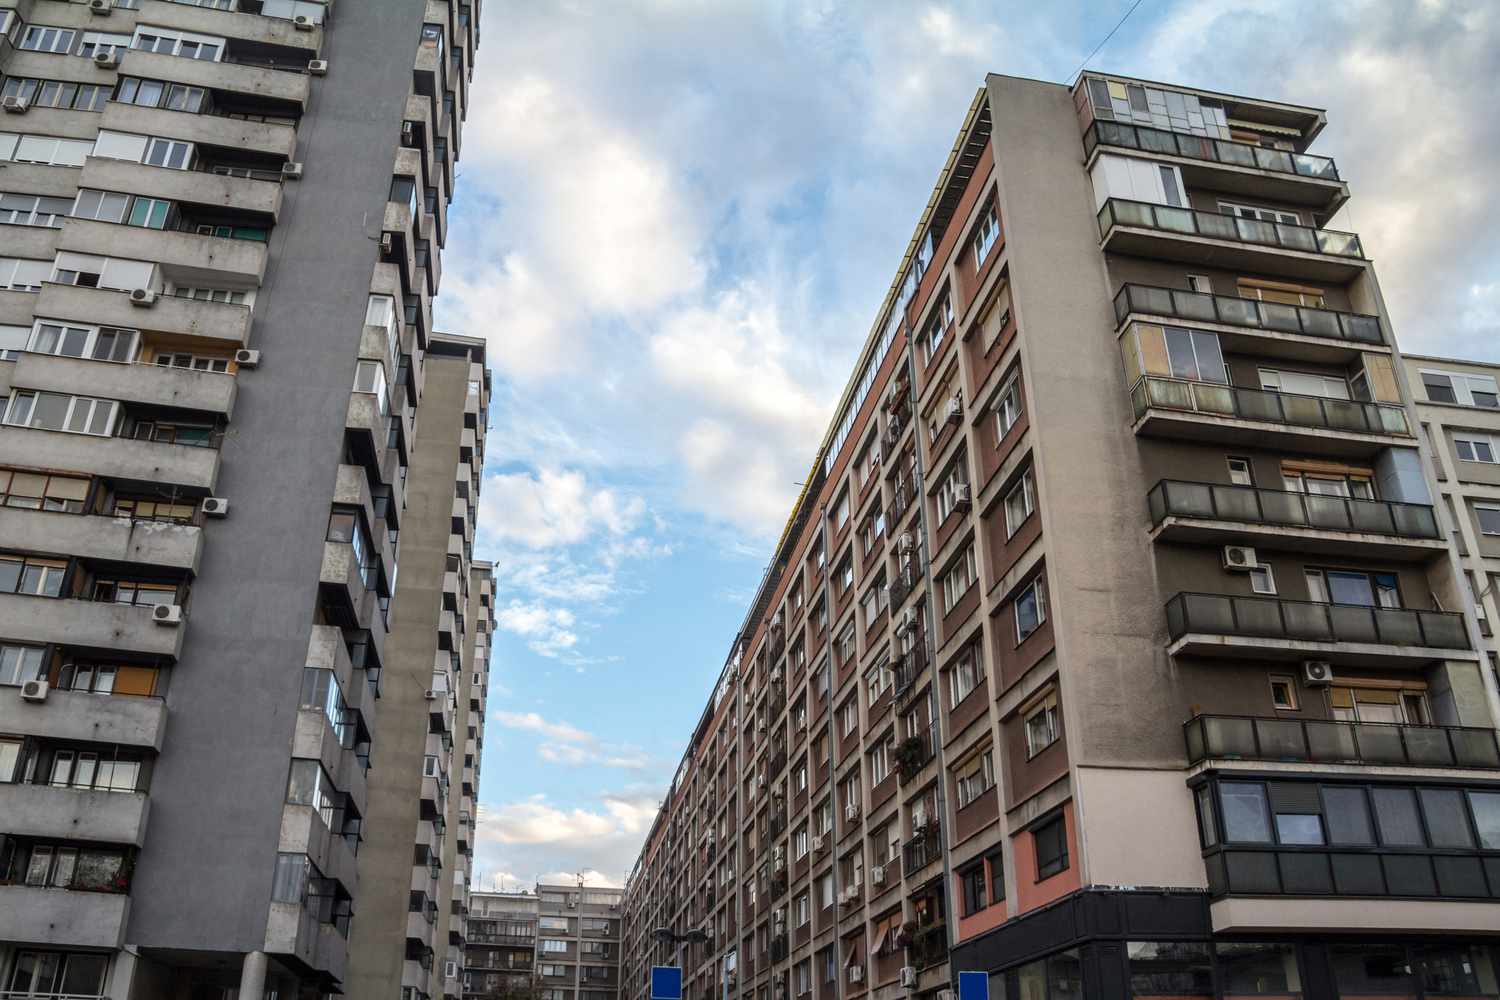 Habitação comunista de estilo brutalista em Belgrado, Sérvia